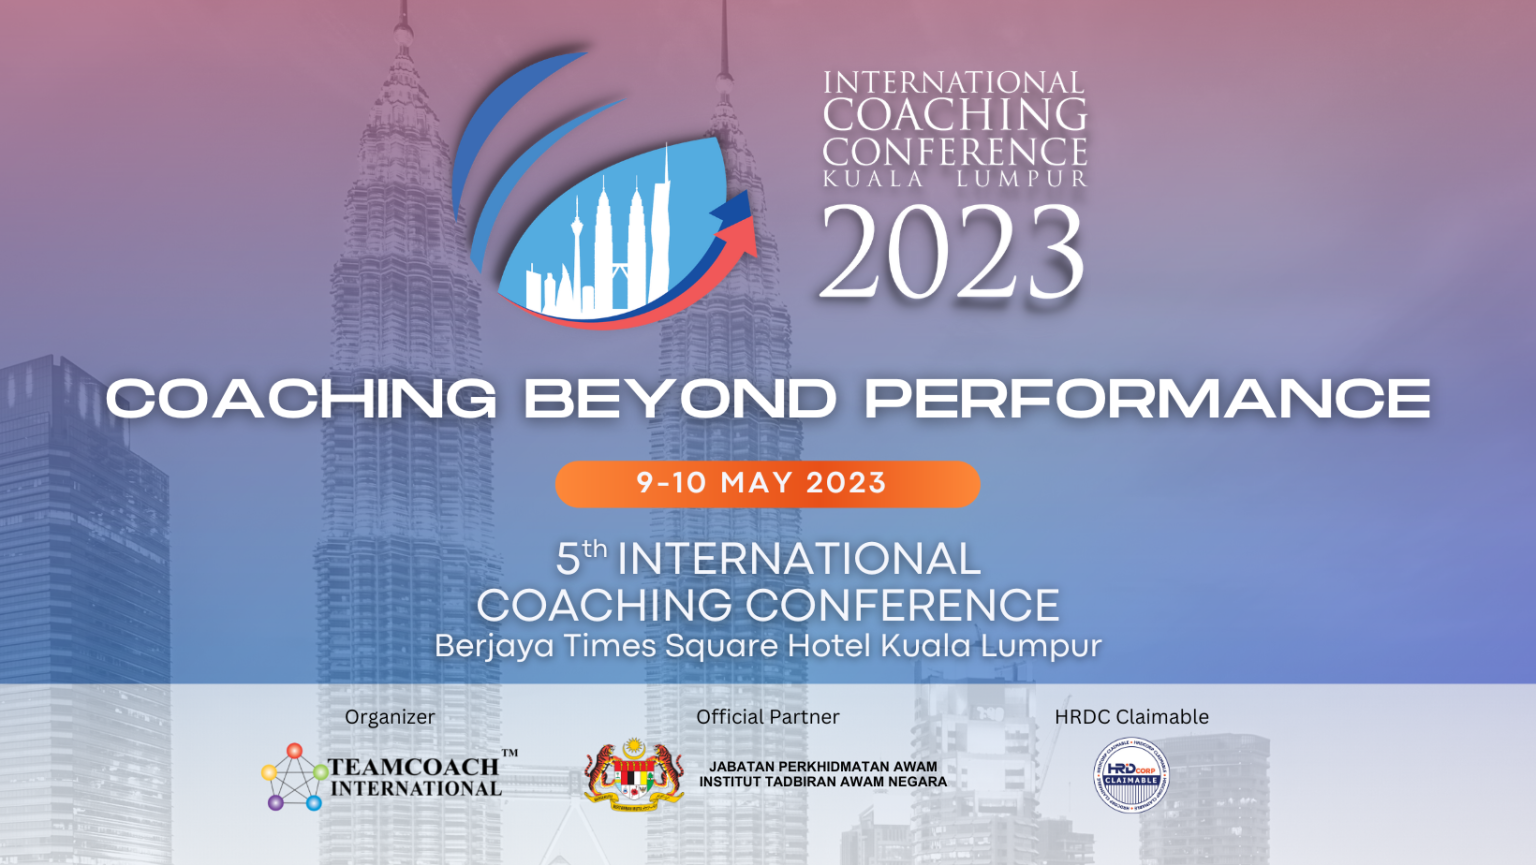 ICCKL International Coaching Conference Kuala Lumpur 2023